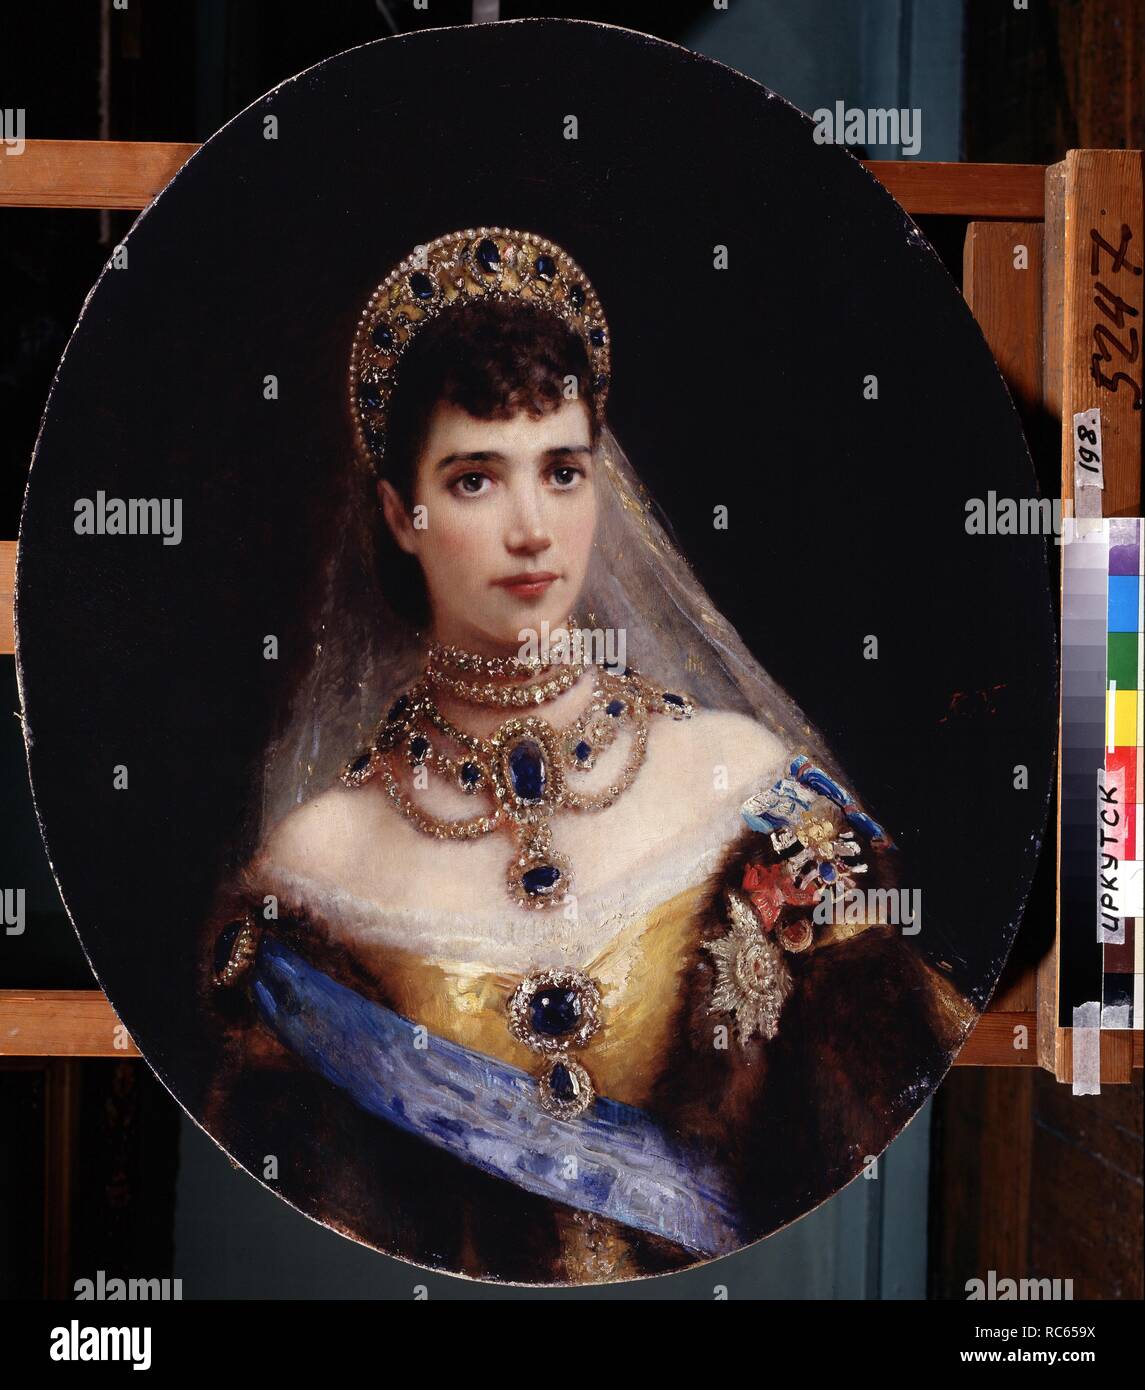 Retrato de la emperatriz Maria Feodorovna, la Princesa Dagmar de Dinamarca  (1847-1928). Museos: Museo de Arte del Estado, Irkutsk. Autor: Makovsky,  Konstantin Yegorovich Fotografía de stock - Alamy